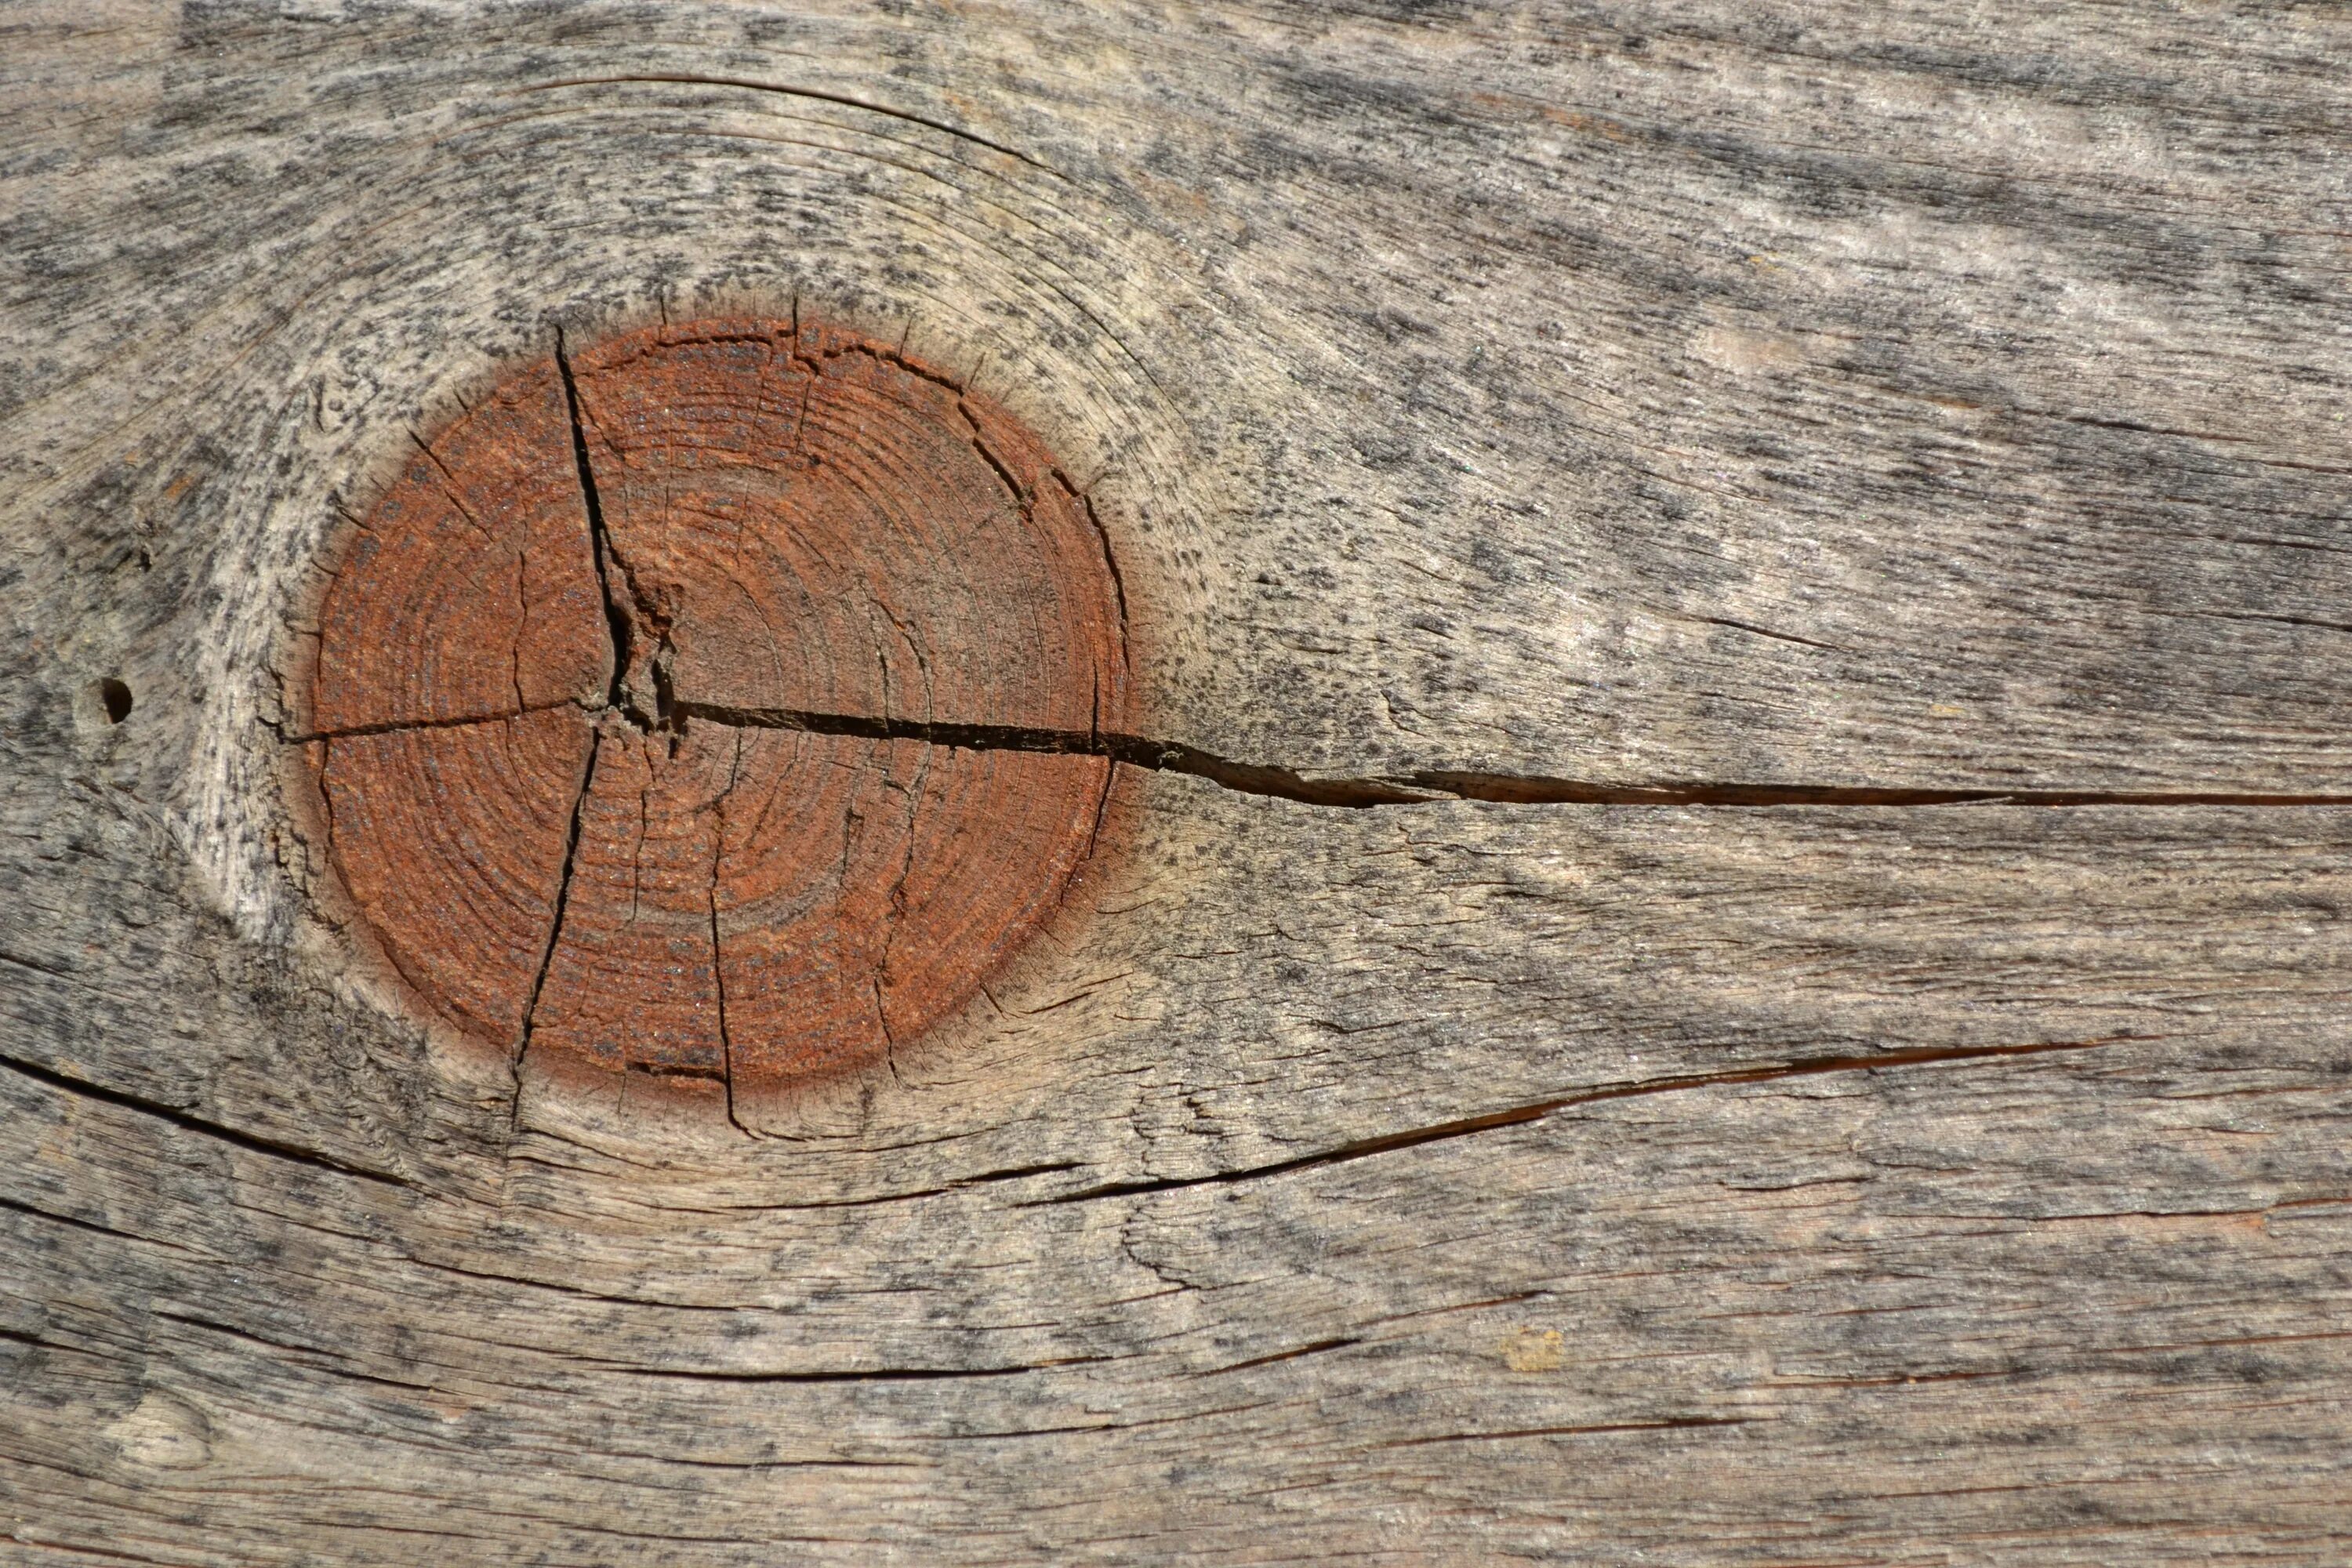 Образ трещины. Трещина в дереве. Трещины древесины. Щель в дереве. Текстура дерева с трещинами.